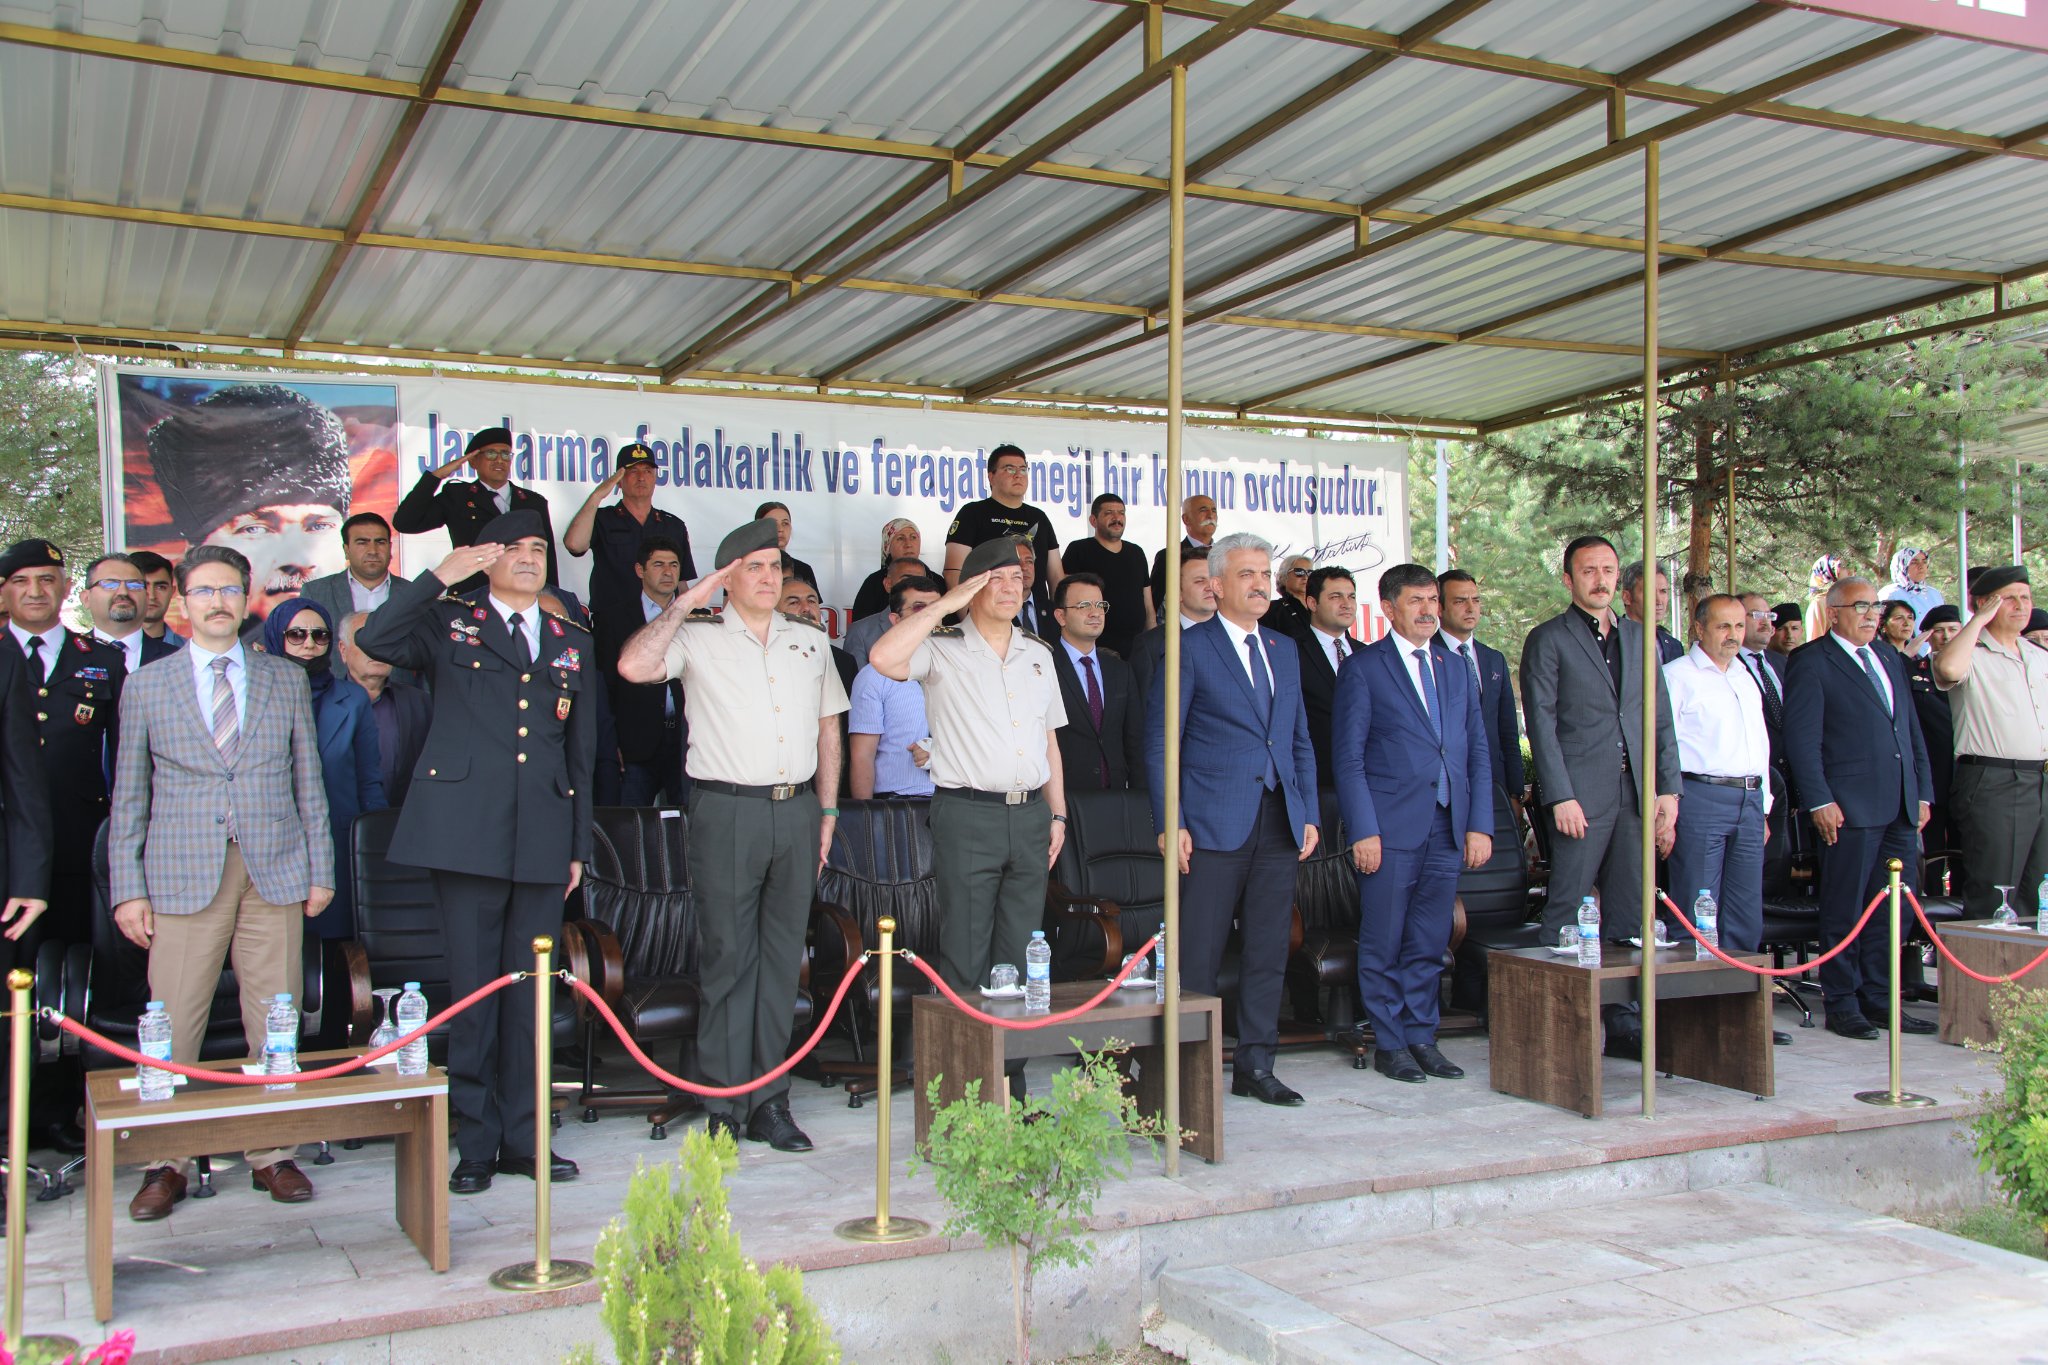 Sayın Erzincan Valisi, Jandarma Teşkilatının 183. Kuruluş Yıl Dönümü Dolayısıyla Düzenlenen Programa Katıldı.